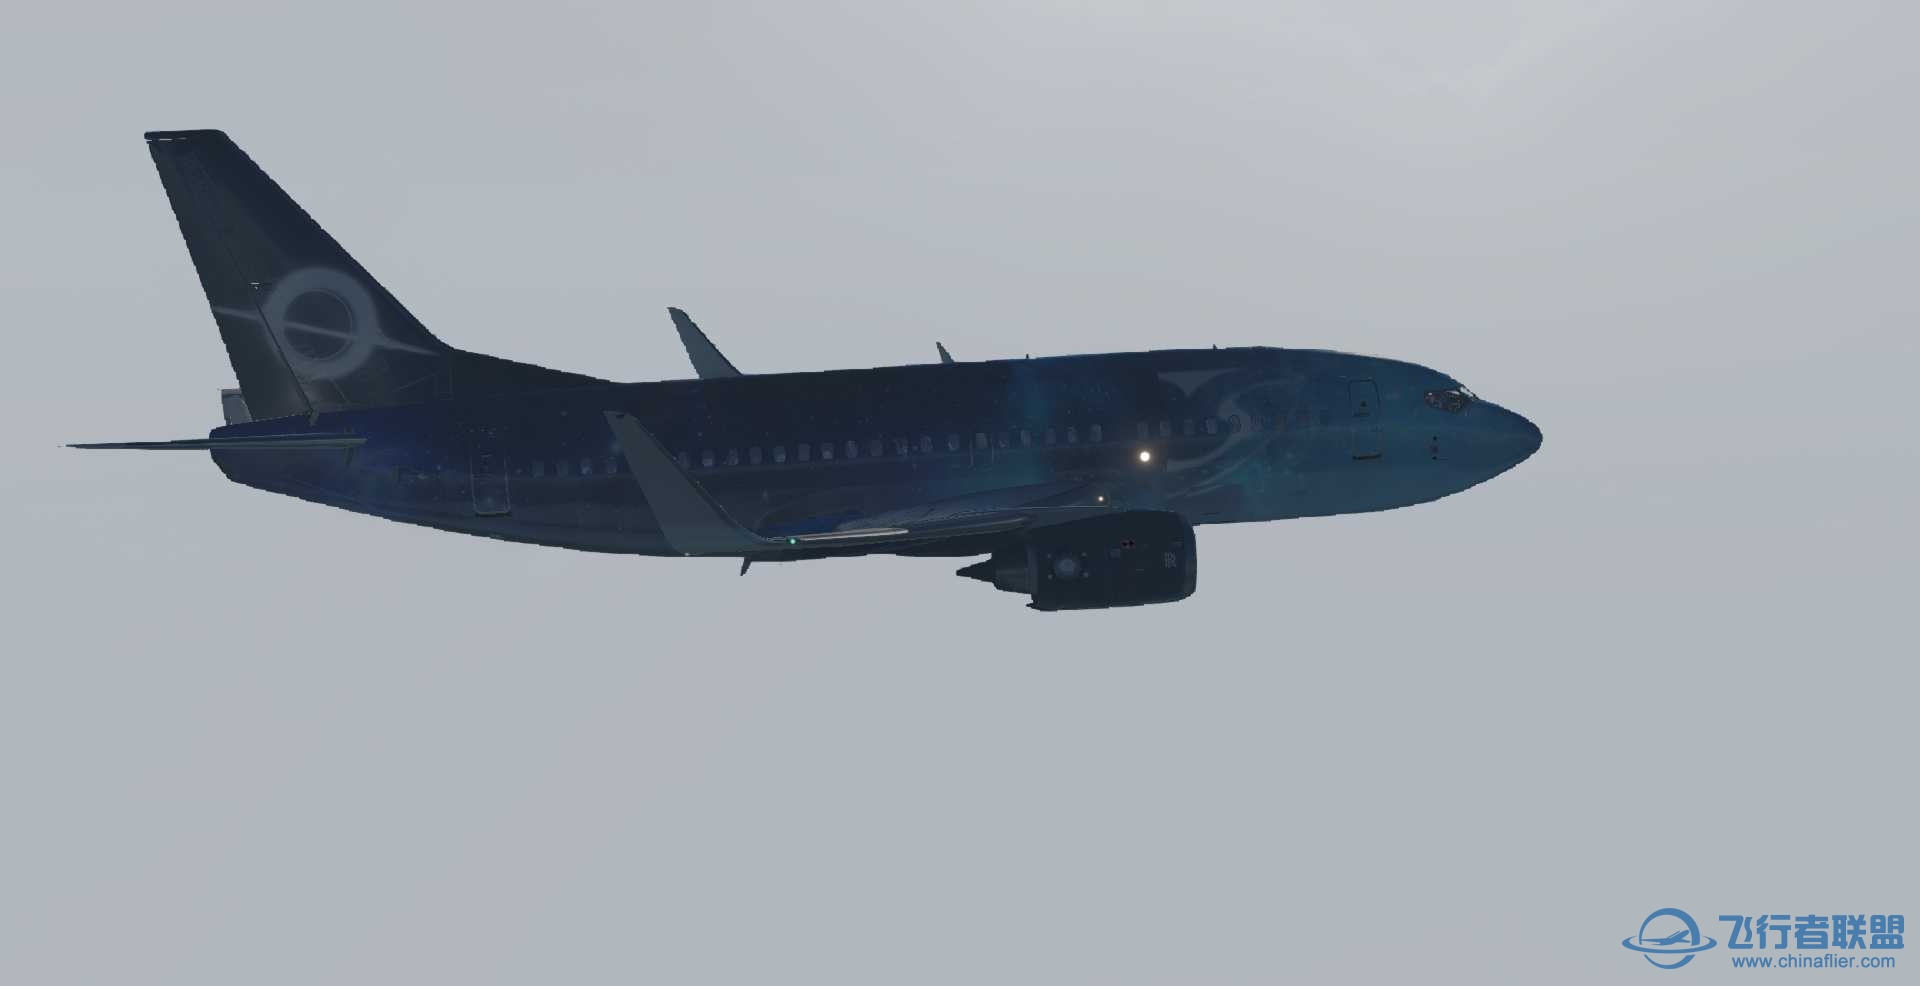 波音737-500 星空彩绘机 ZSPD-ZBAD航线美图-9492 